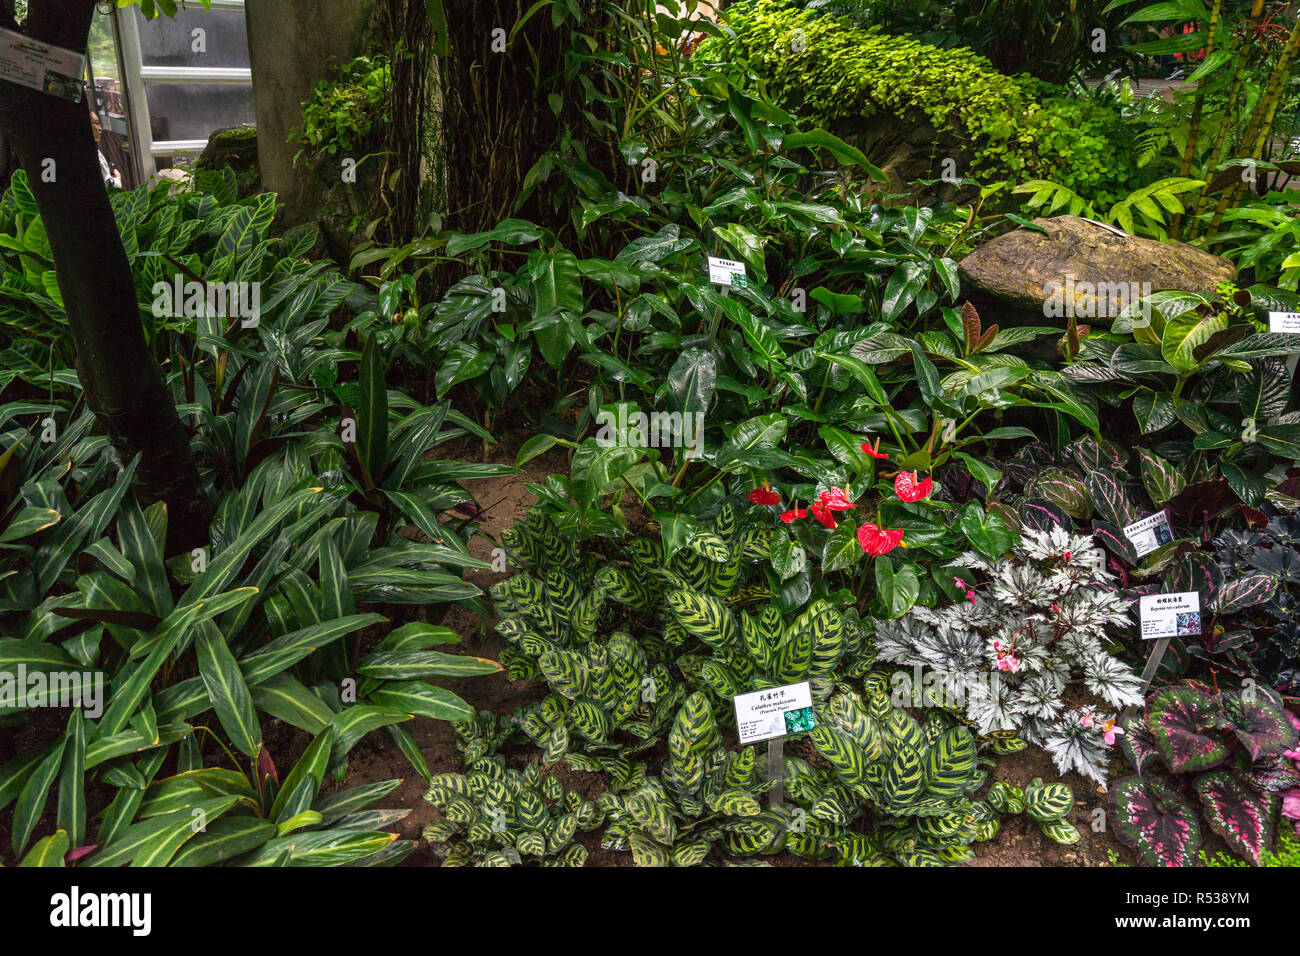 Au Conservatoire siteforsgate Country Park Hong Kong montrant des plantes tropicales et le feuillage dans la jungle humide Maison Usine Banque D'Images